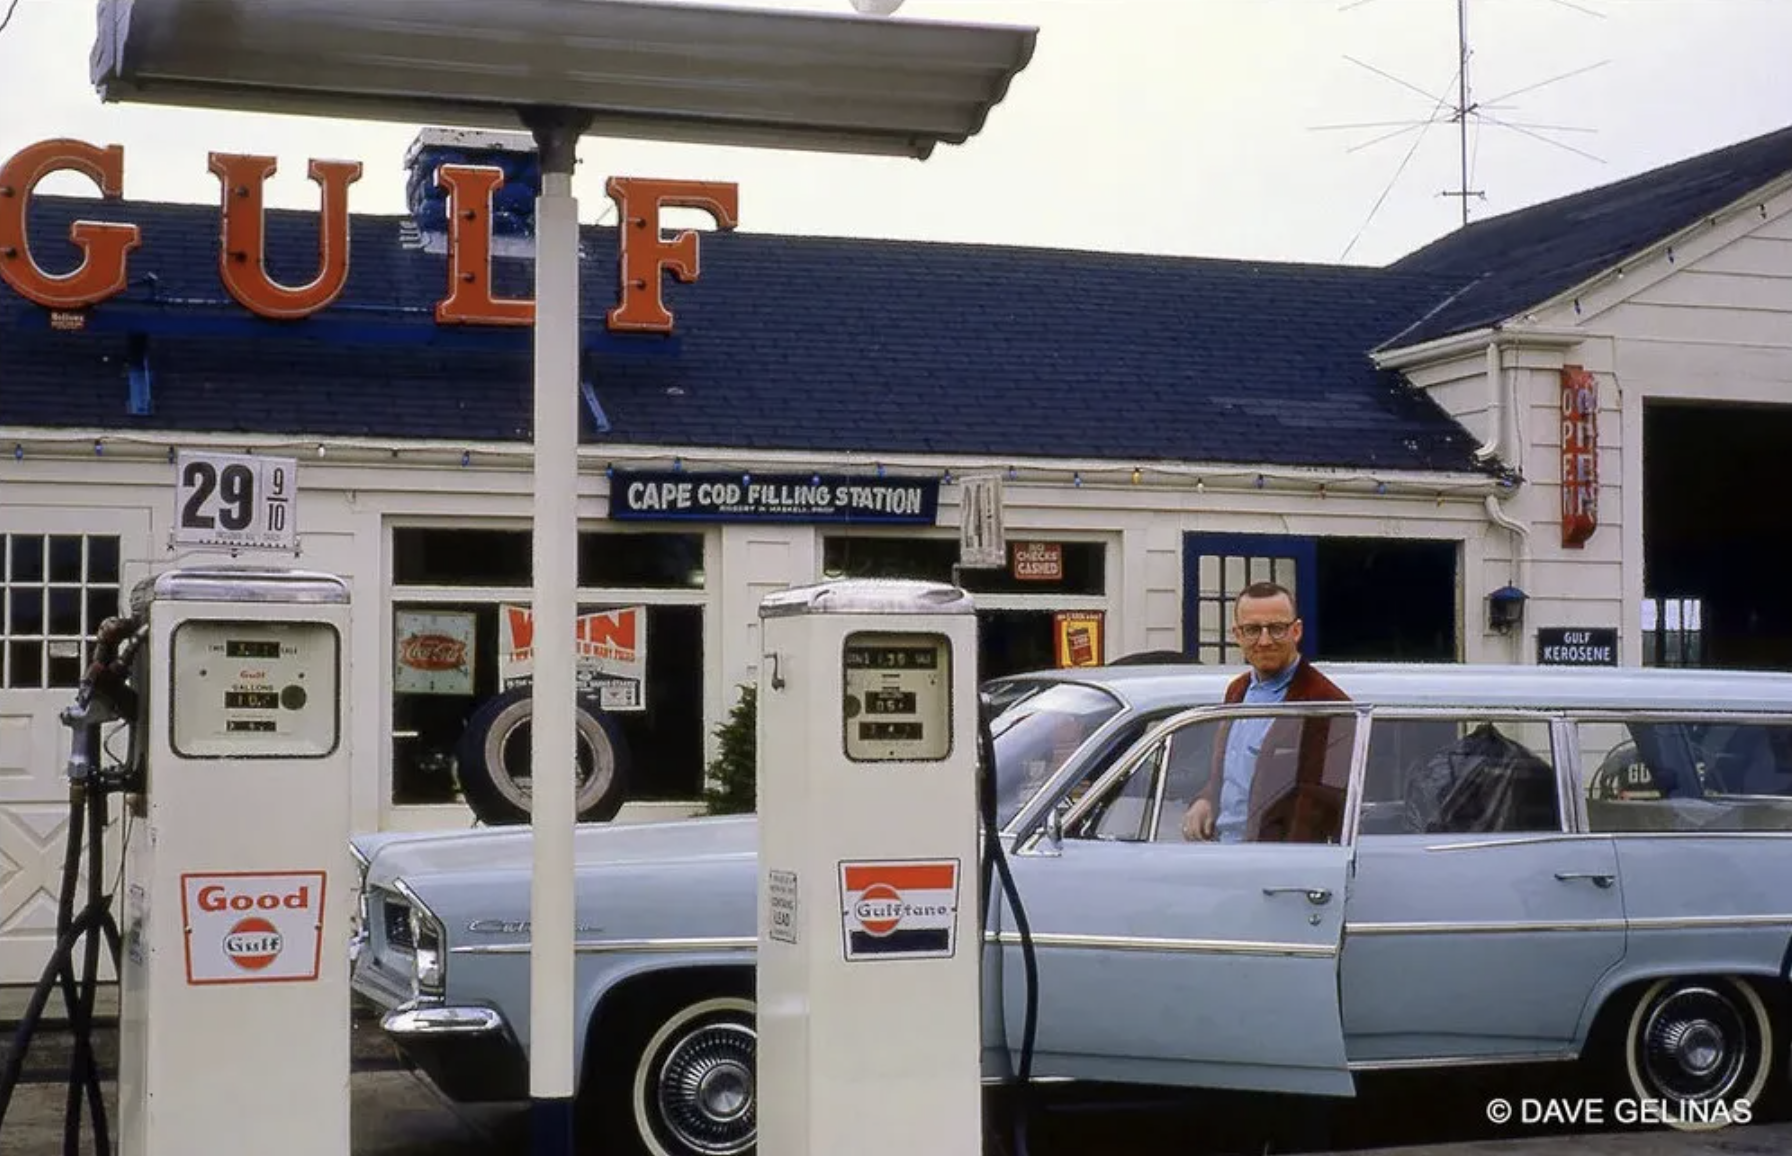 gas station 1964 - Guif 29 Cape Cod Filling Station Good Kerosene Dave Gelinas